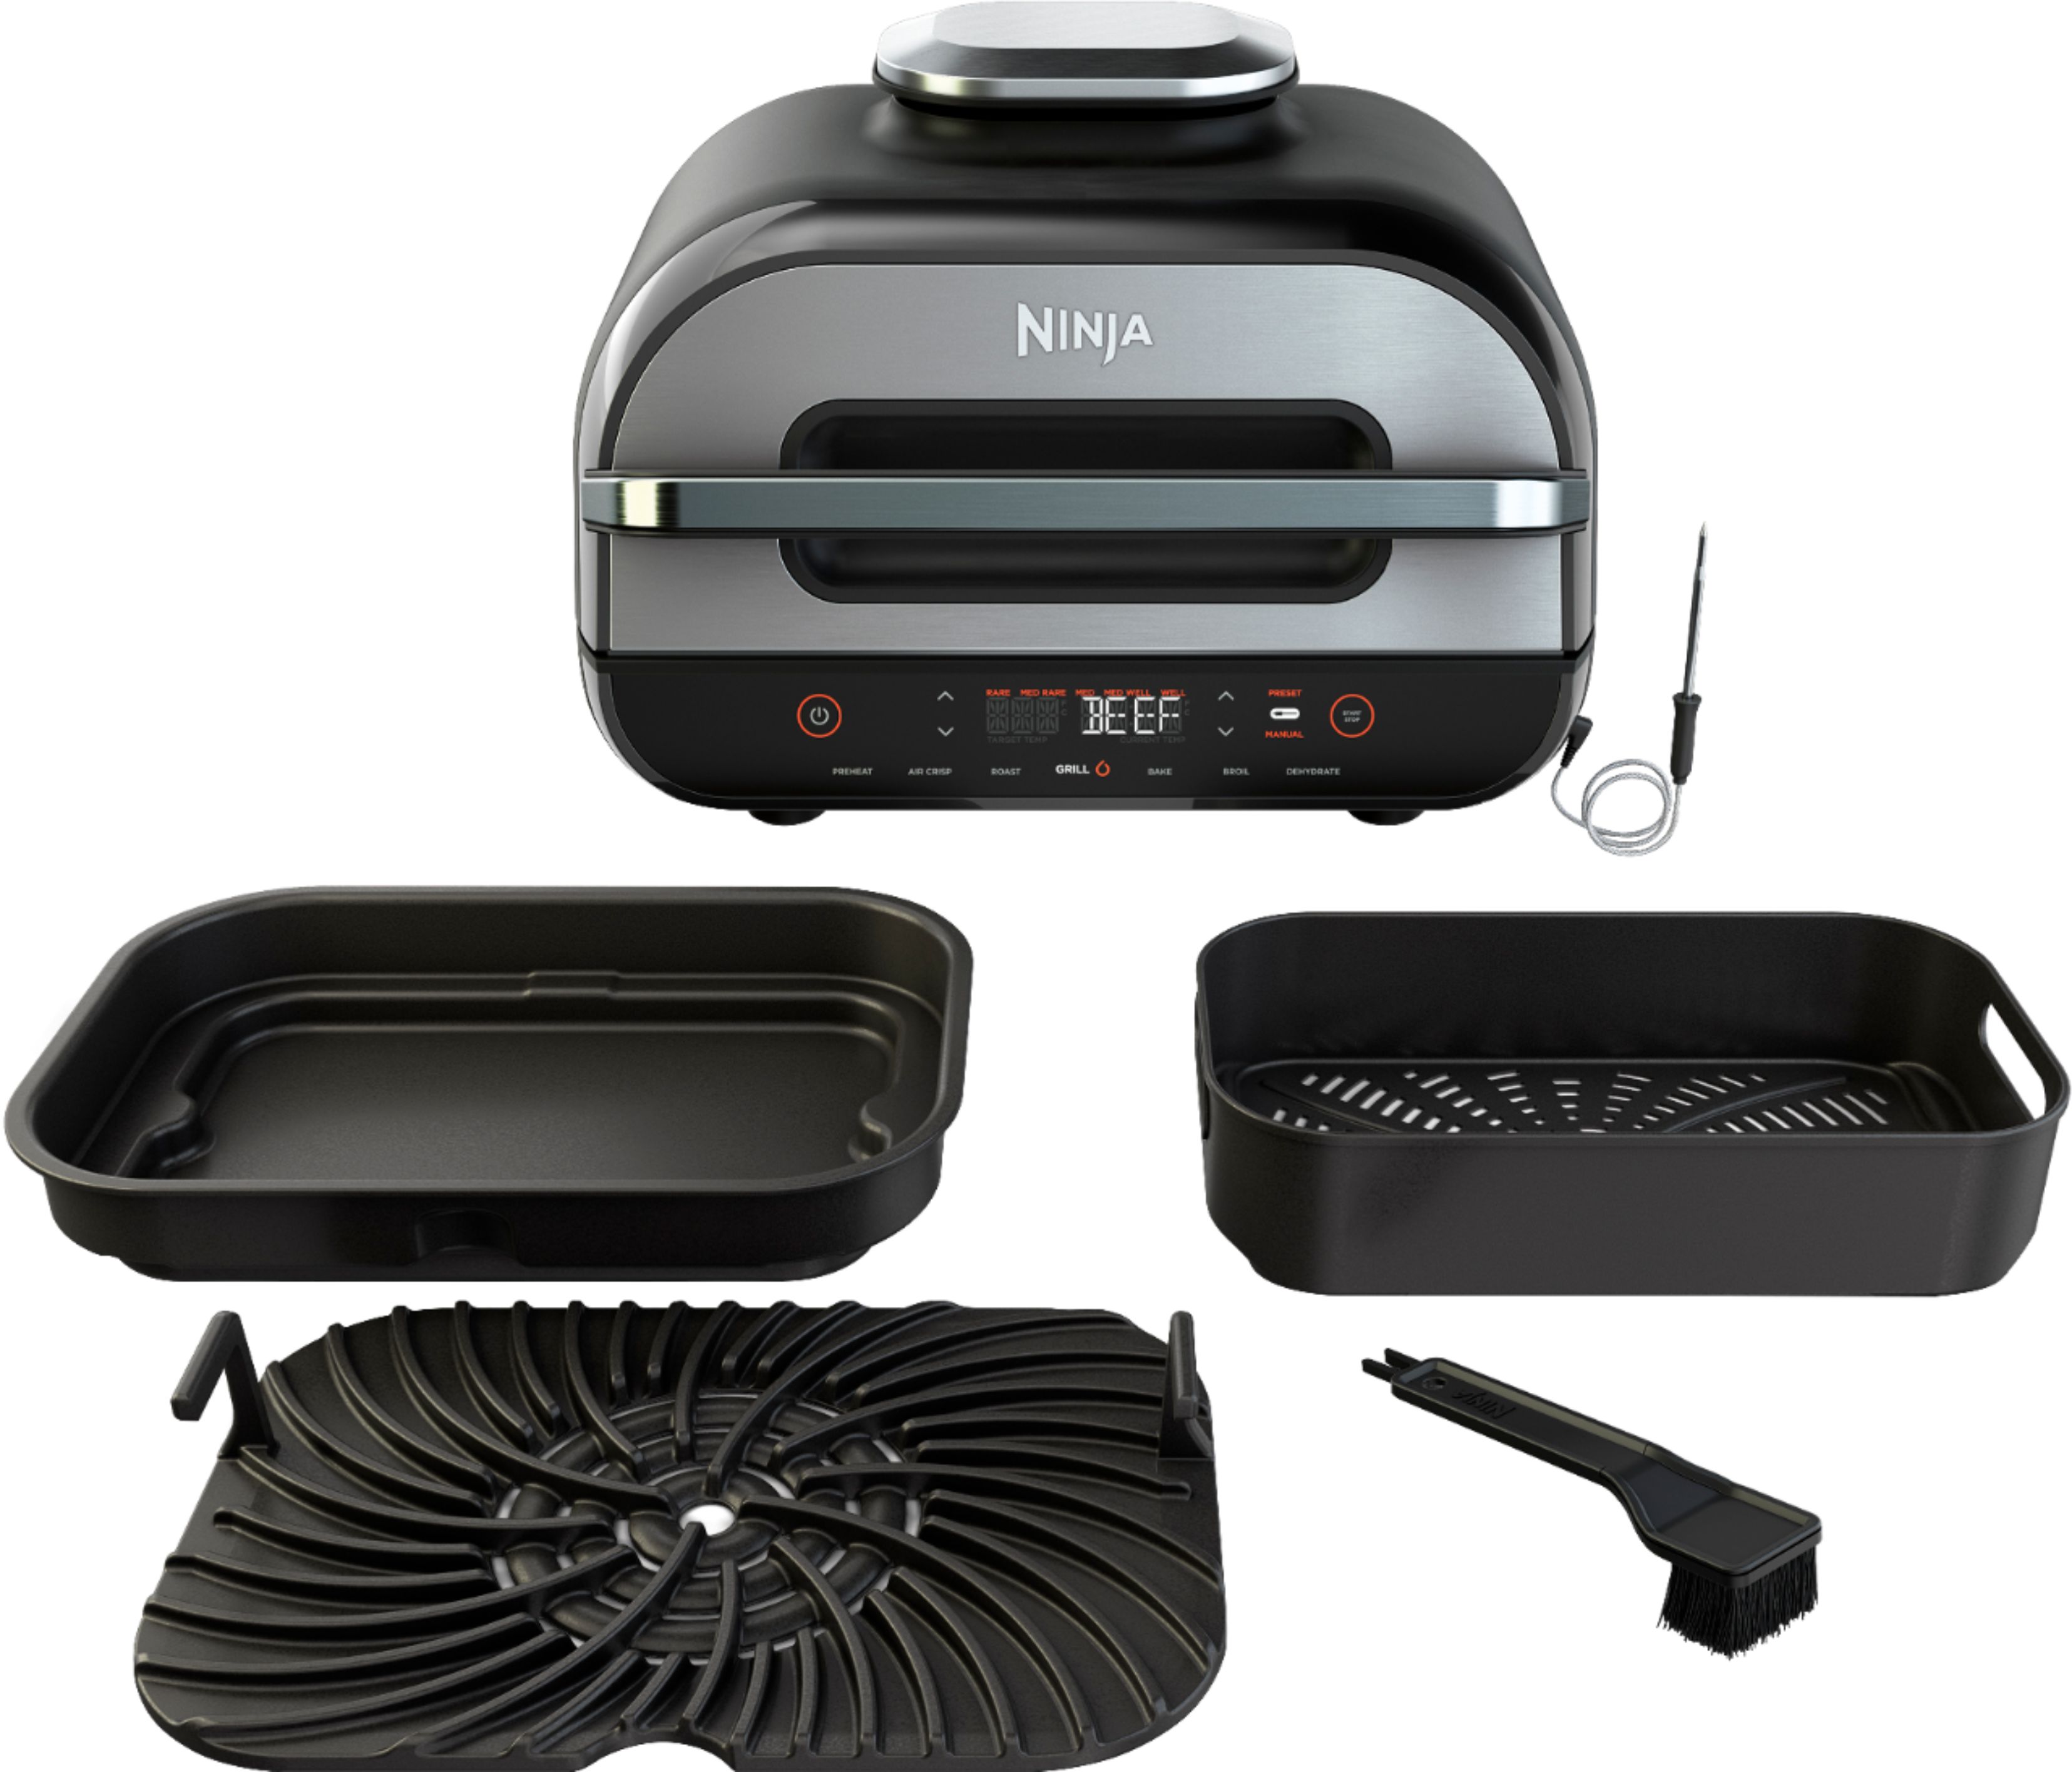 NinjaA Foodi Smart XL 4-in-1 Indoor Grill With Air Fryer FG550 Roast And Bake 